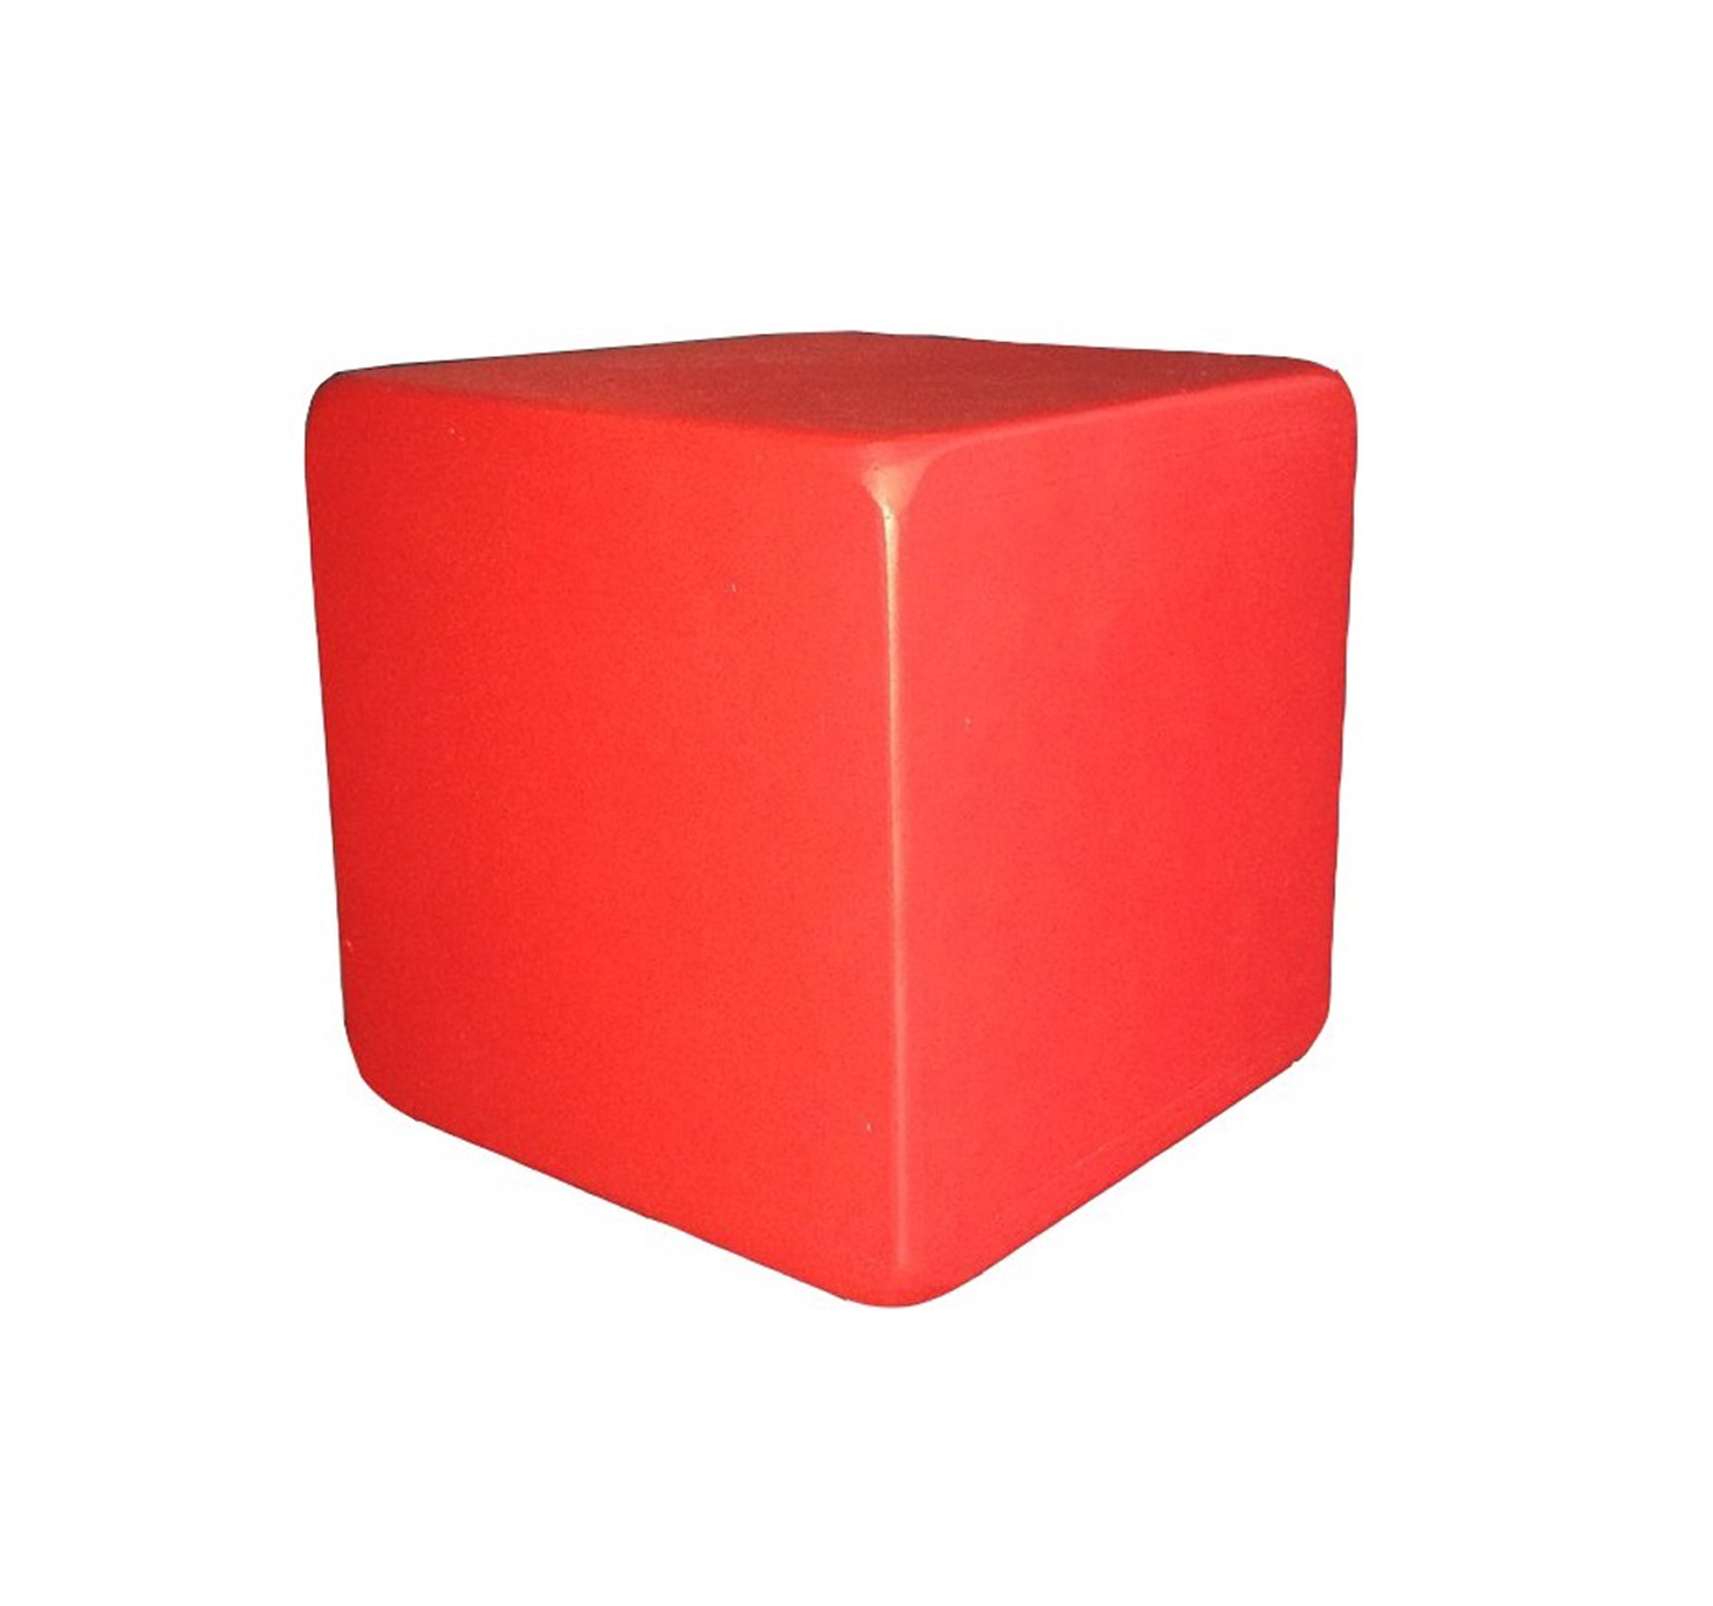 Reg kz. Куб деревянный ребро 20 см. Кубики пластмассовые. Кубики для детей. Кубик пластиковый.